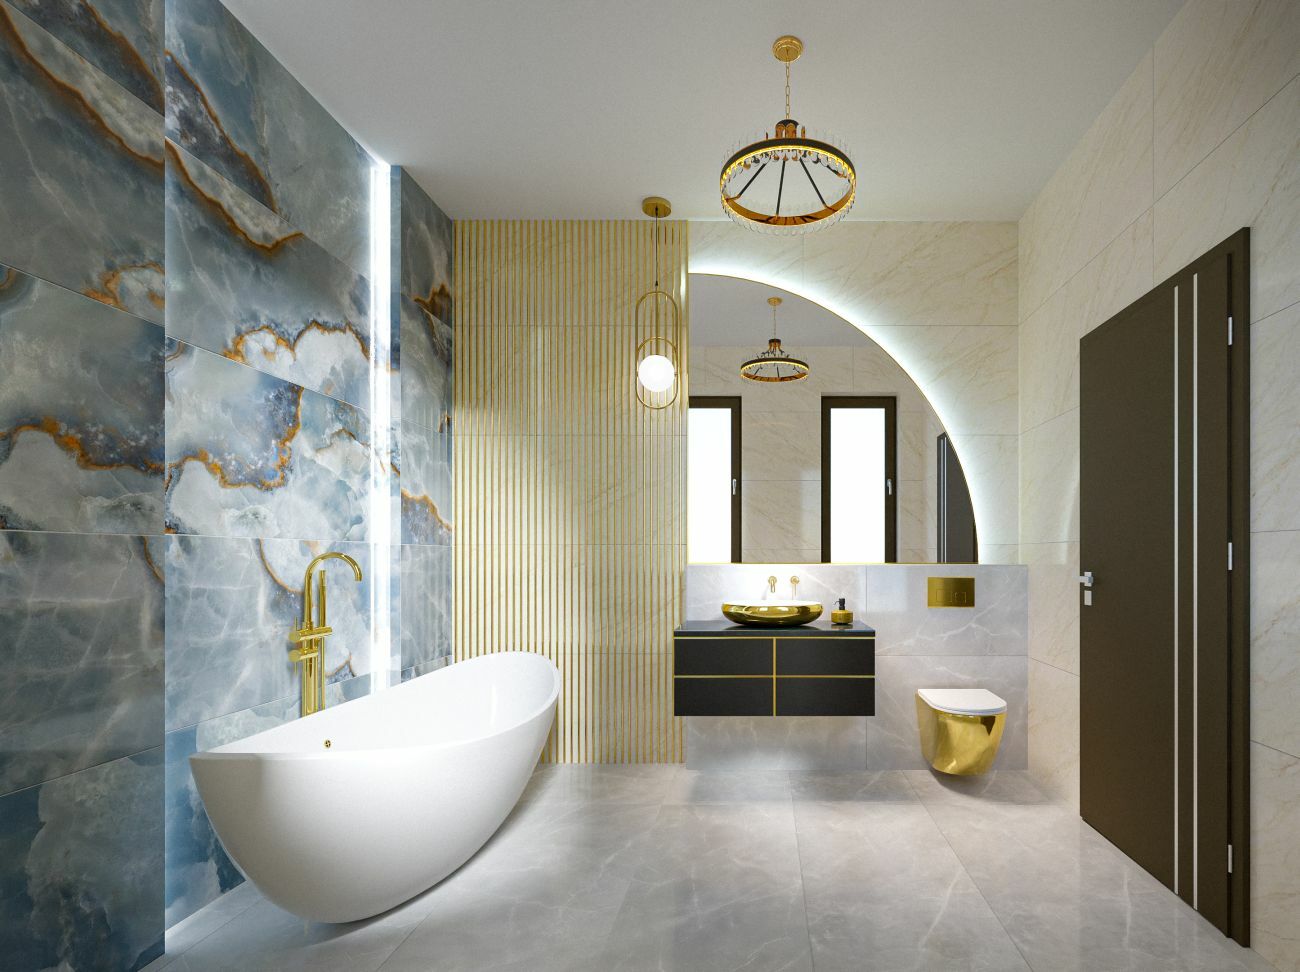 Hófehér fürdőkád és arany színű szaniterek egysége